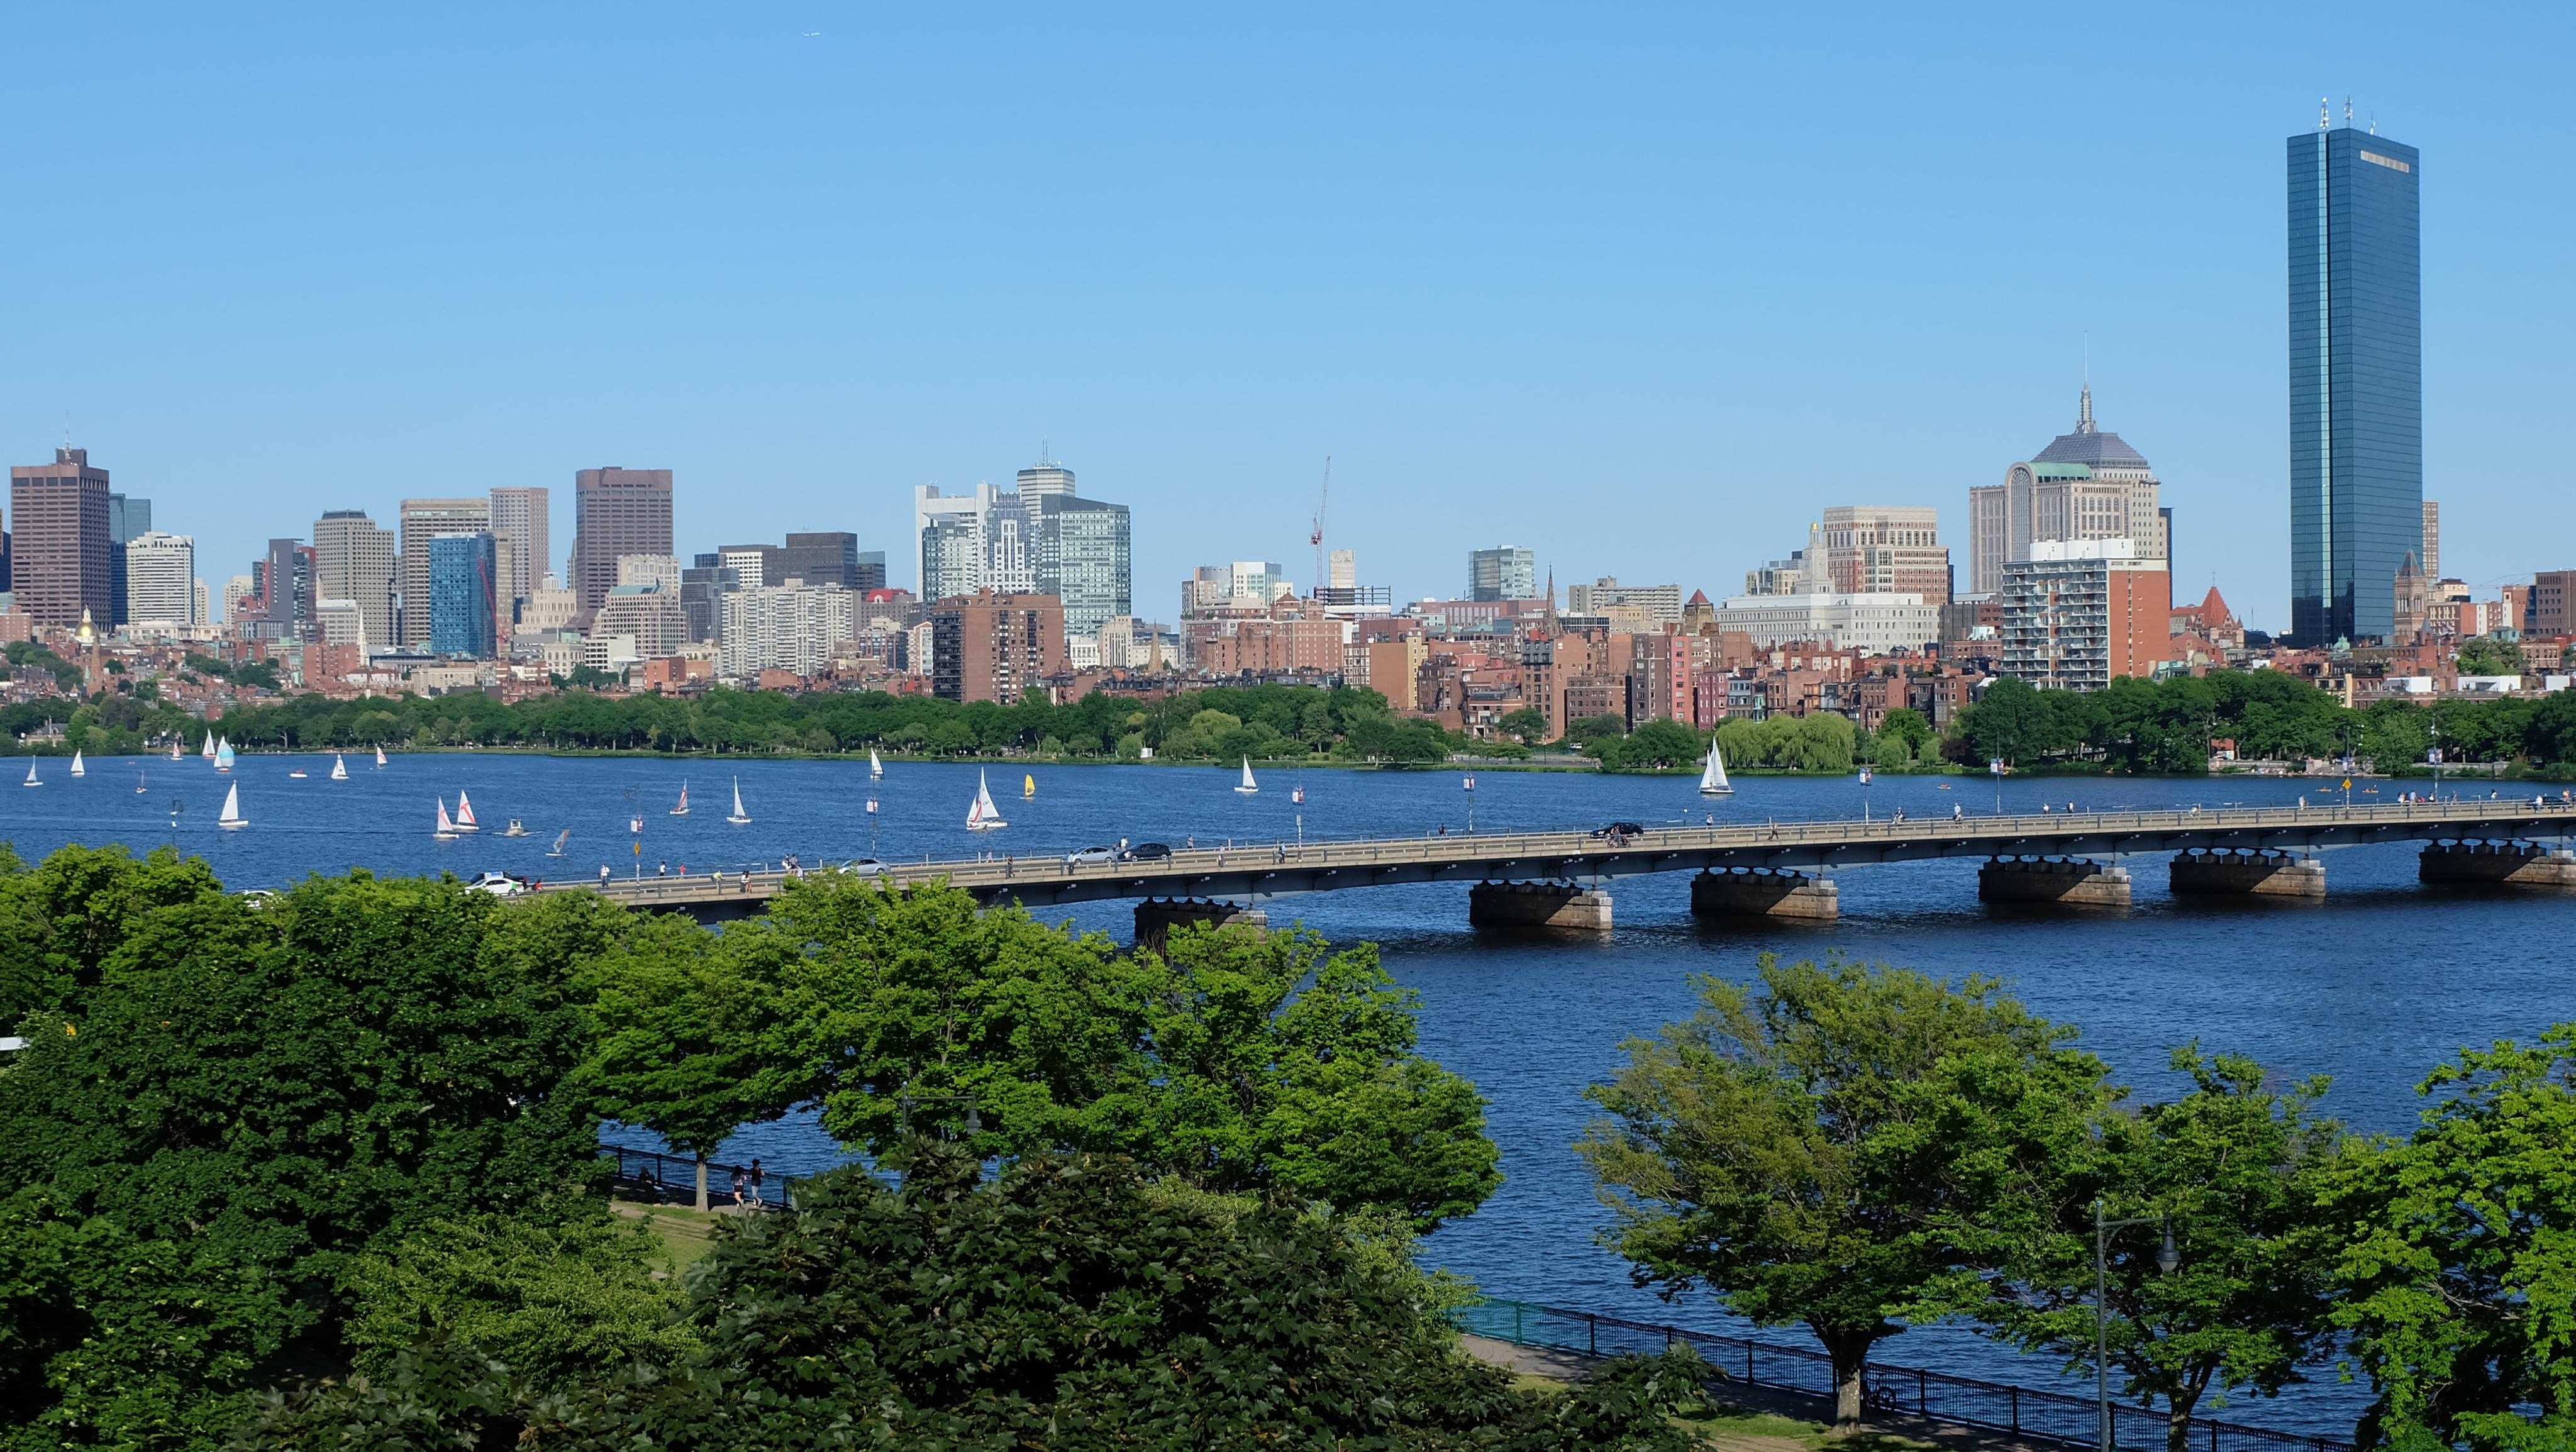 望向对岸的downtown,便能尽收波士顿查尔斯河两岸的盛世美景